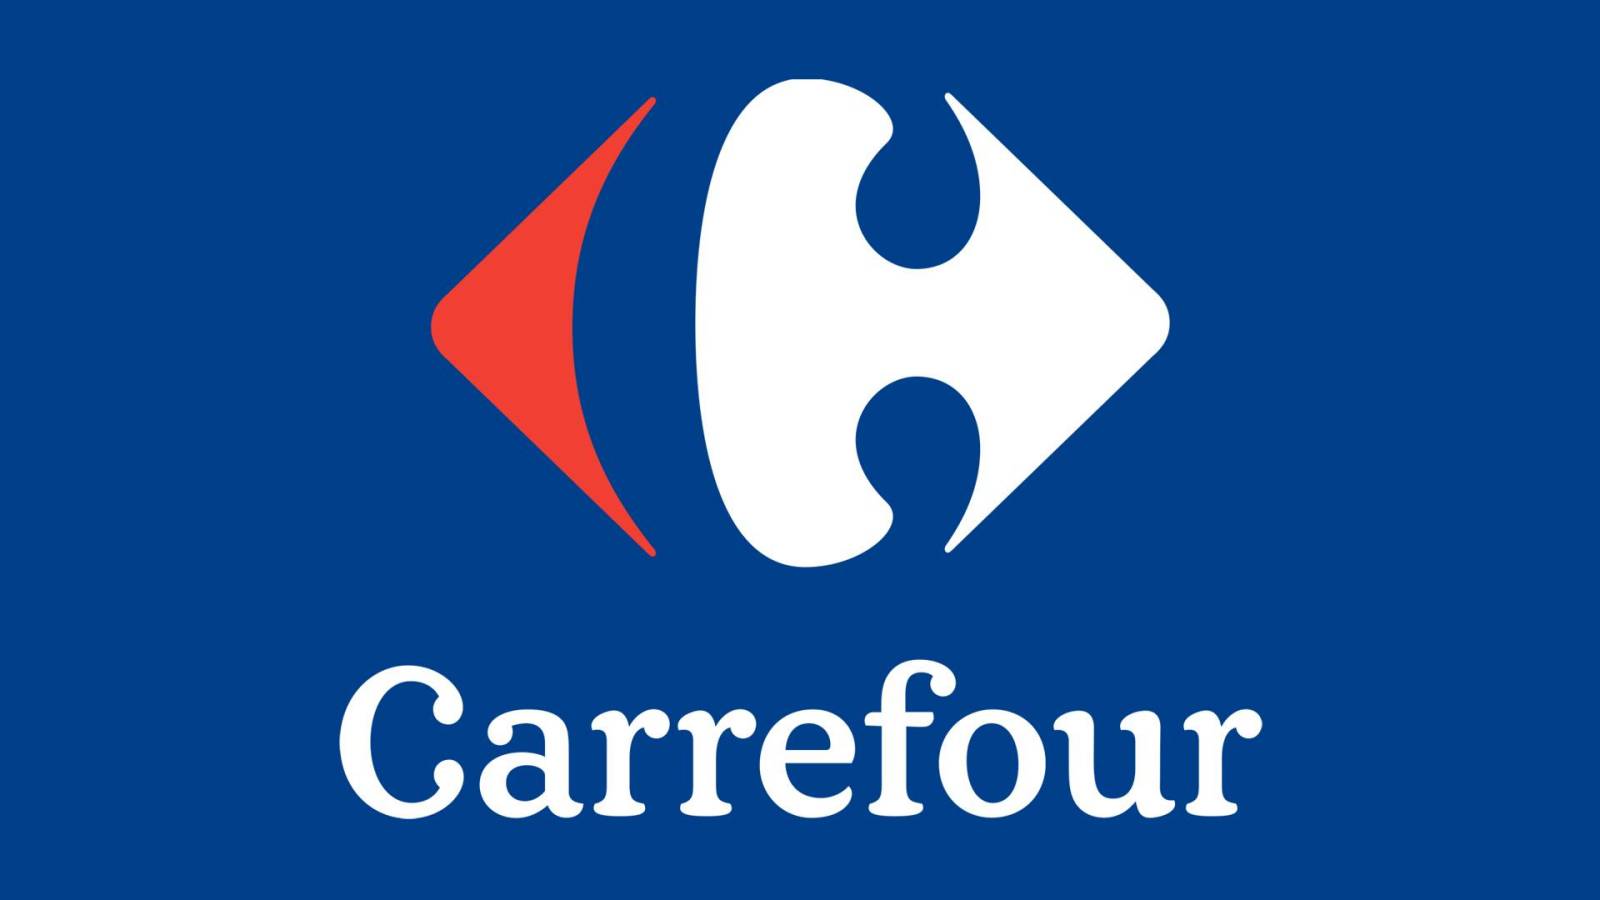 Carrefour VIKTIGT GRATIS BESLUT till rumäner över hela landet